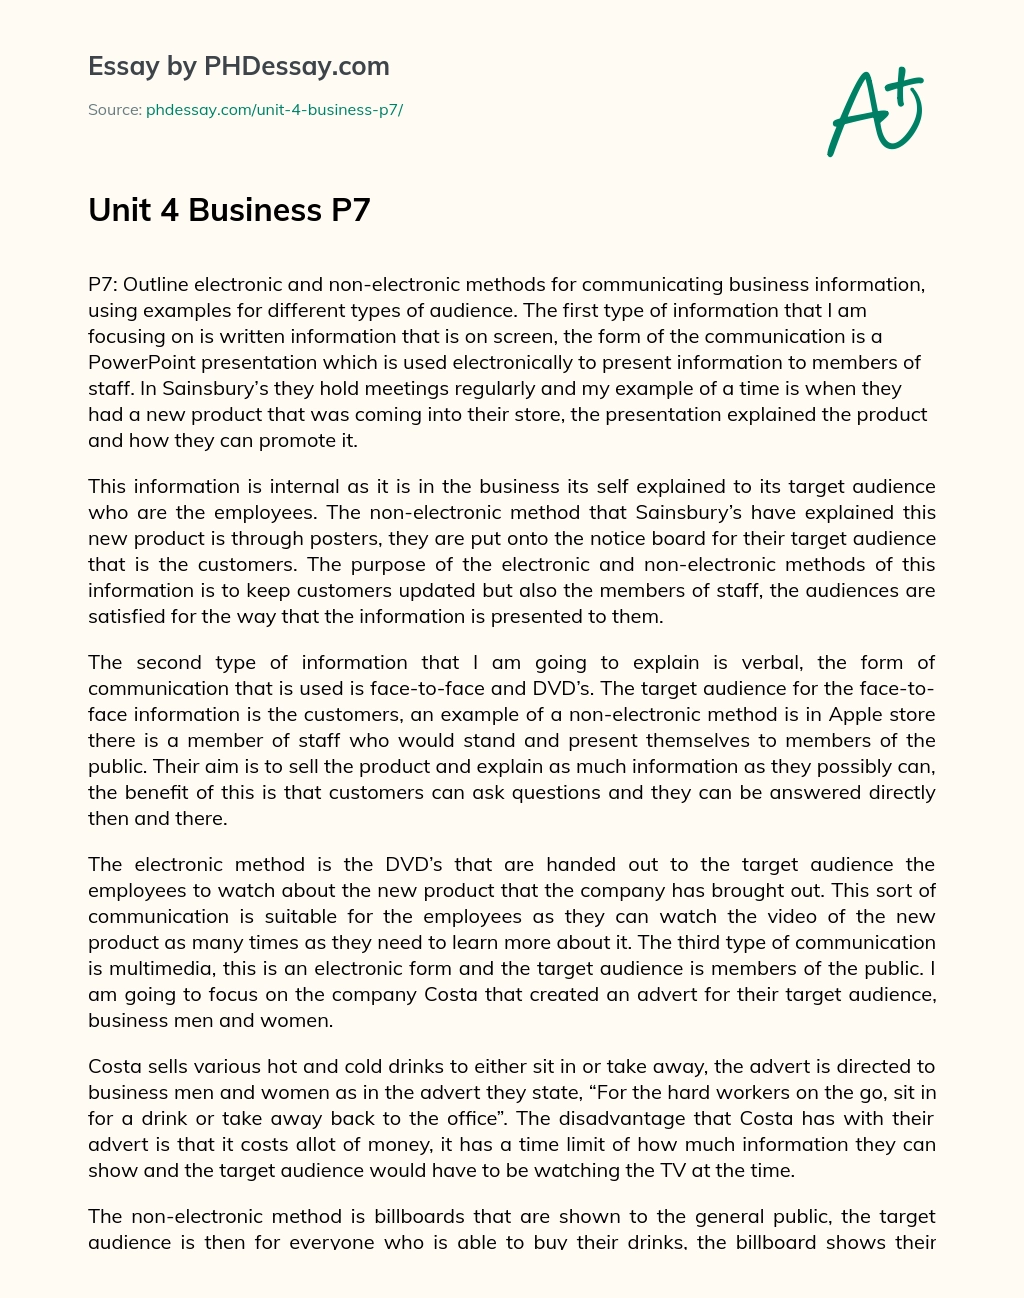 Unit 4 Business P7 essay